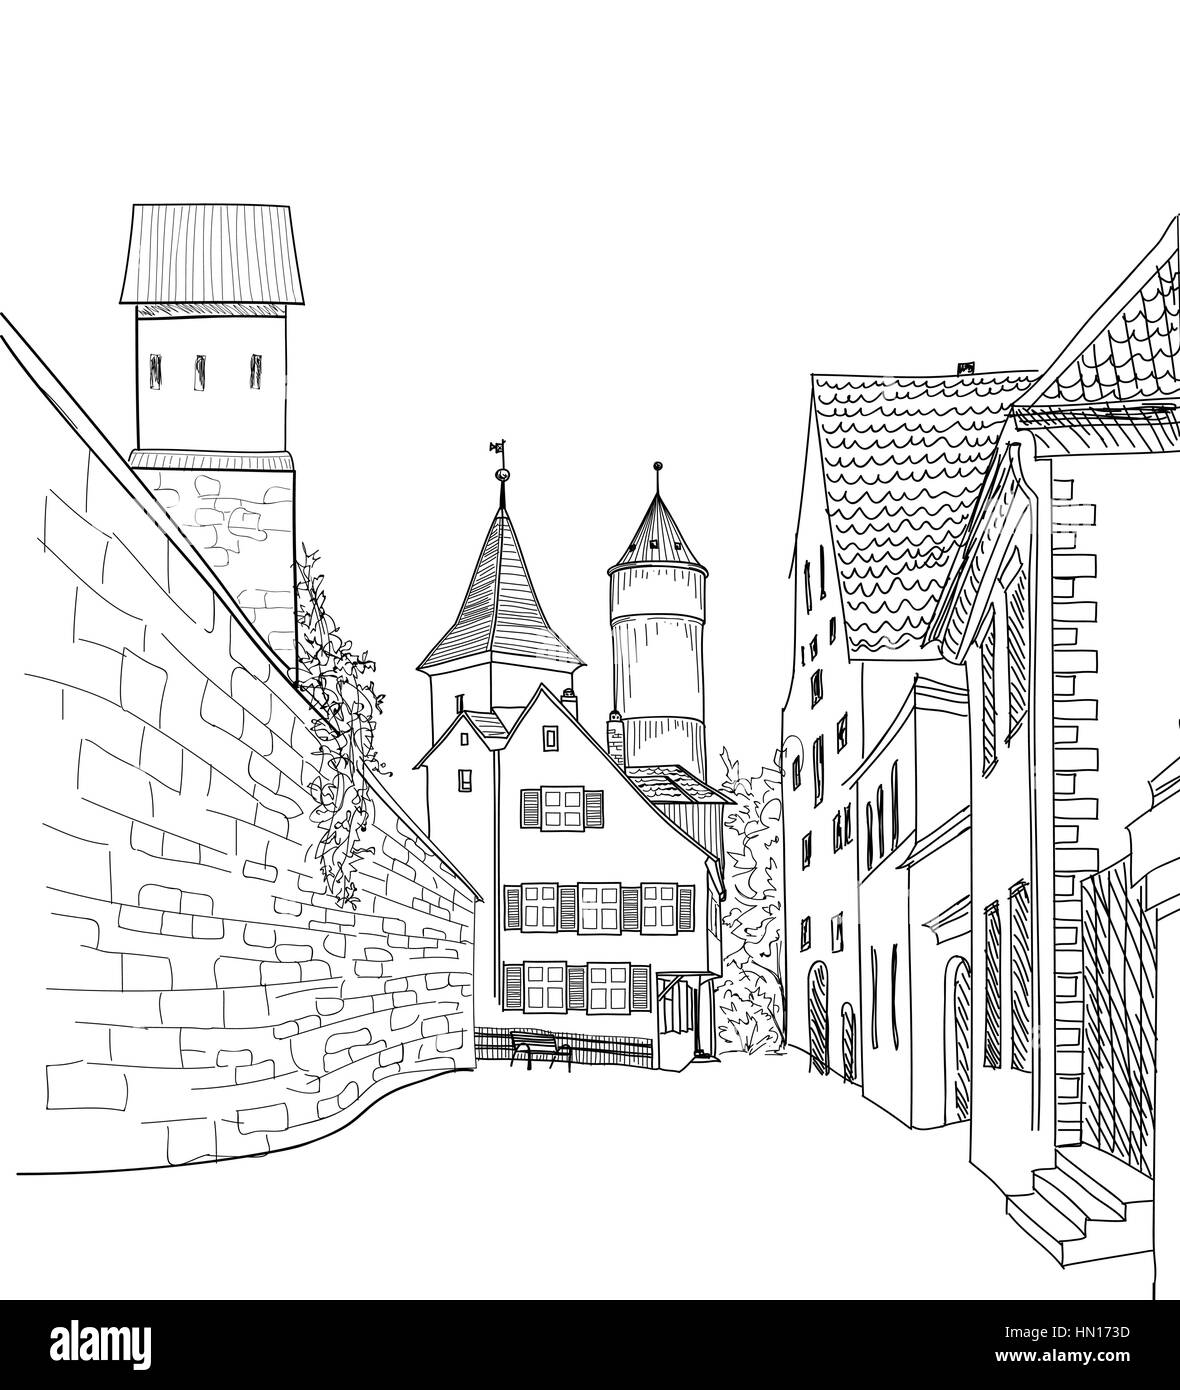 Straße in der Altstadt. das Stadtbild - Häuser, Gebäude und Baum auf der Gasse. Die Altstadt. mittelalterlichen europäischen schloss Landschaft. Gravur vektor Skizze Stock Vektor